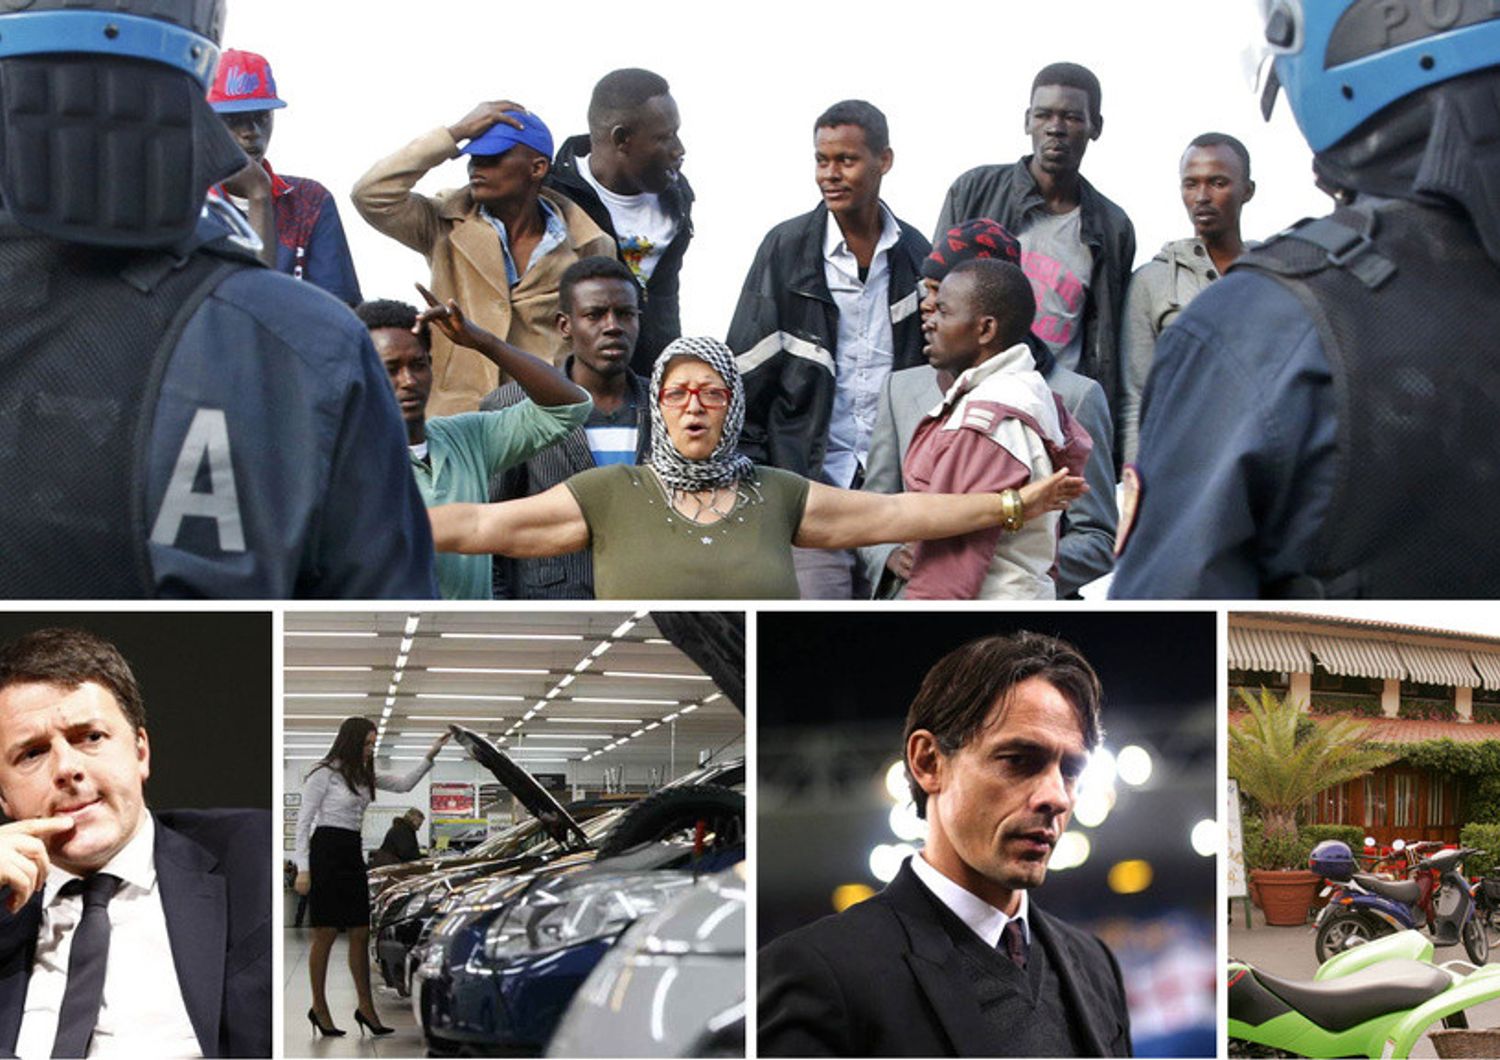 Dallo sgombero dei migranti all'esonero di Inzaghi, le cinque notizie da non perdere oggi